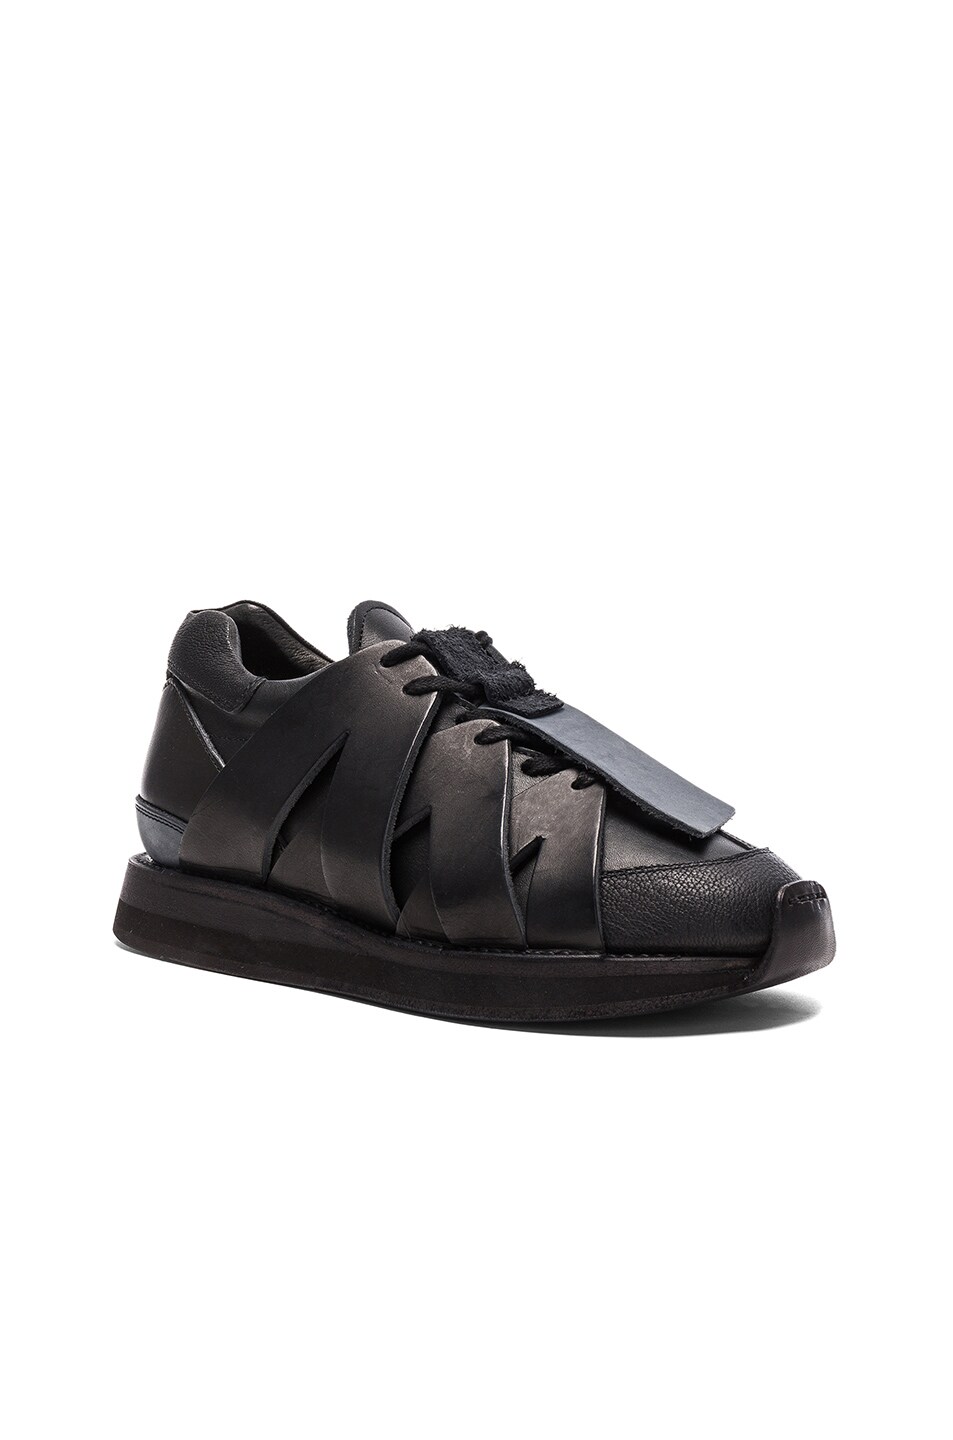 Image 1 of Hender Scheme 2015 Sneakers in Black